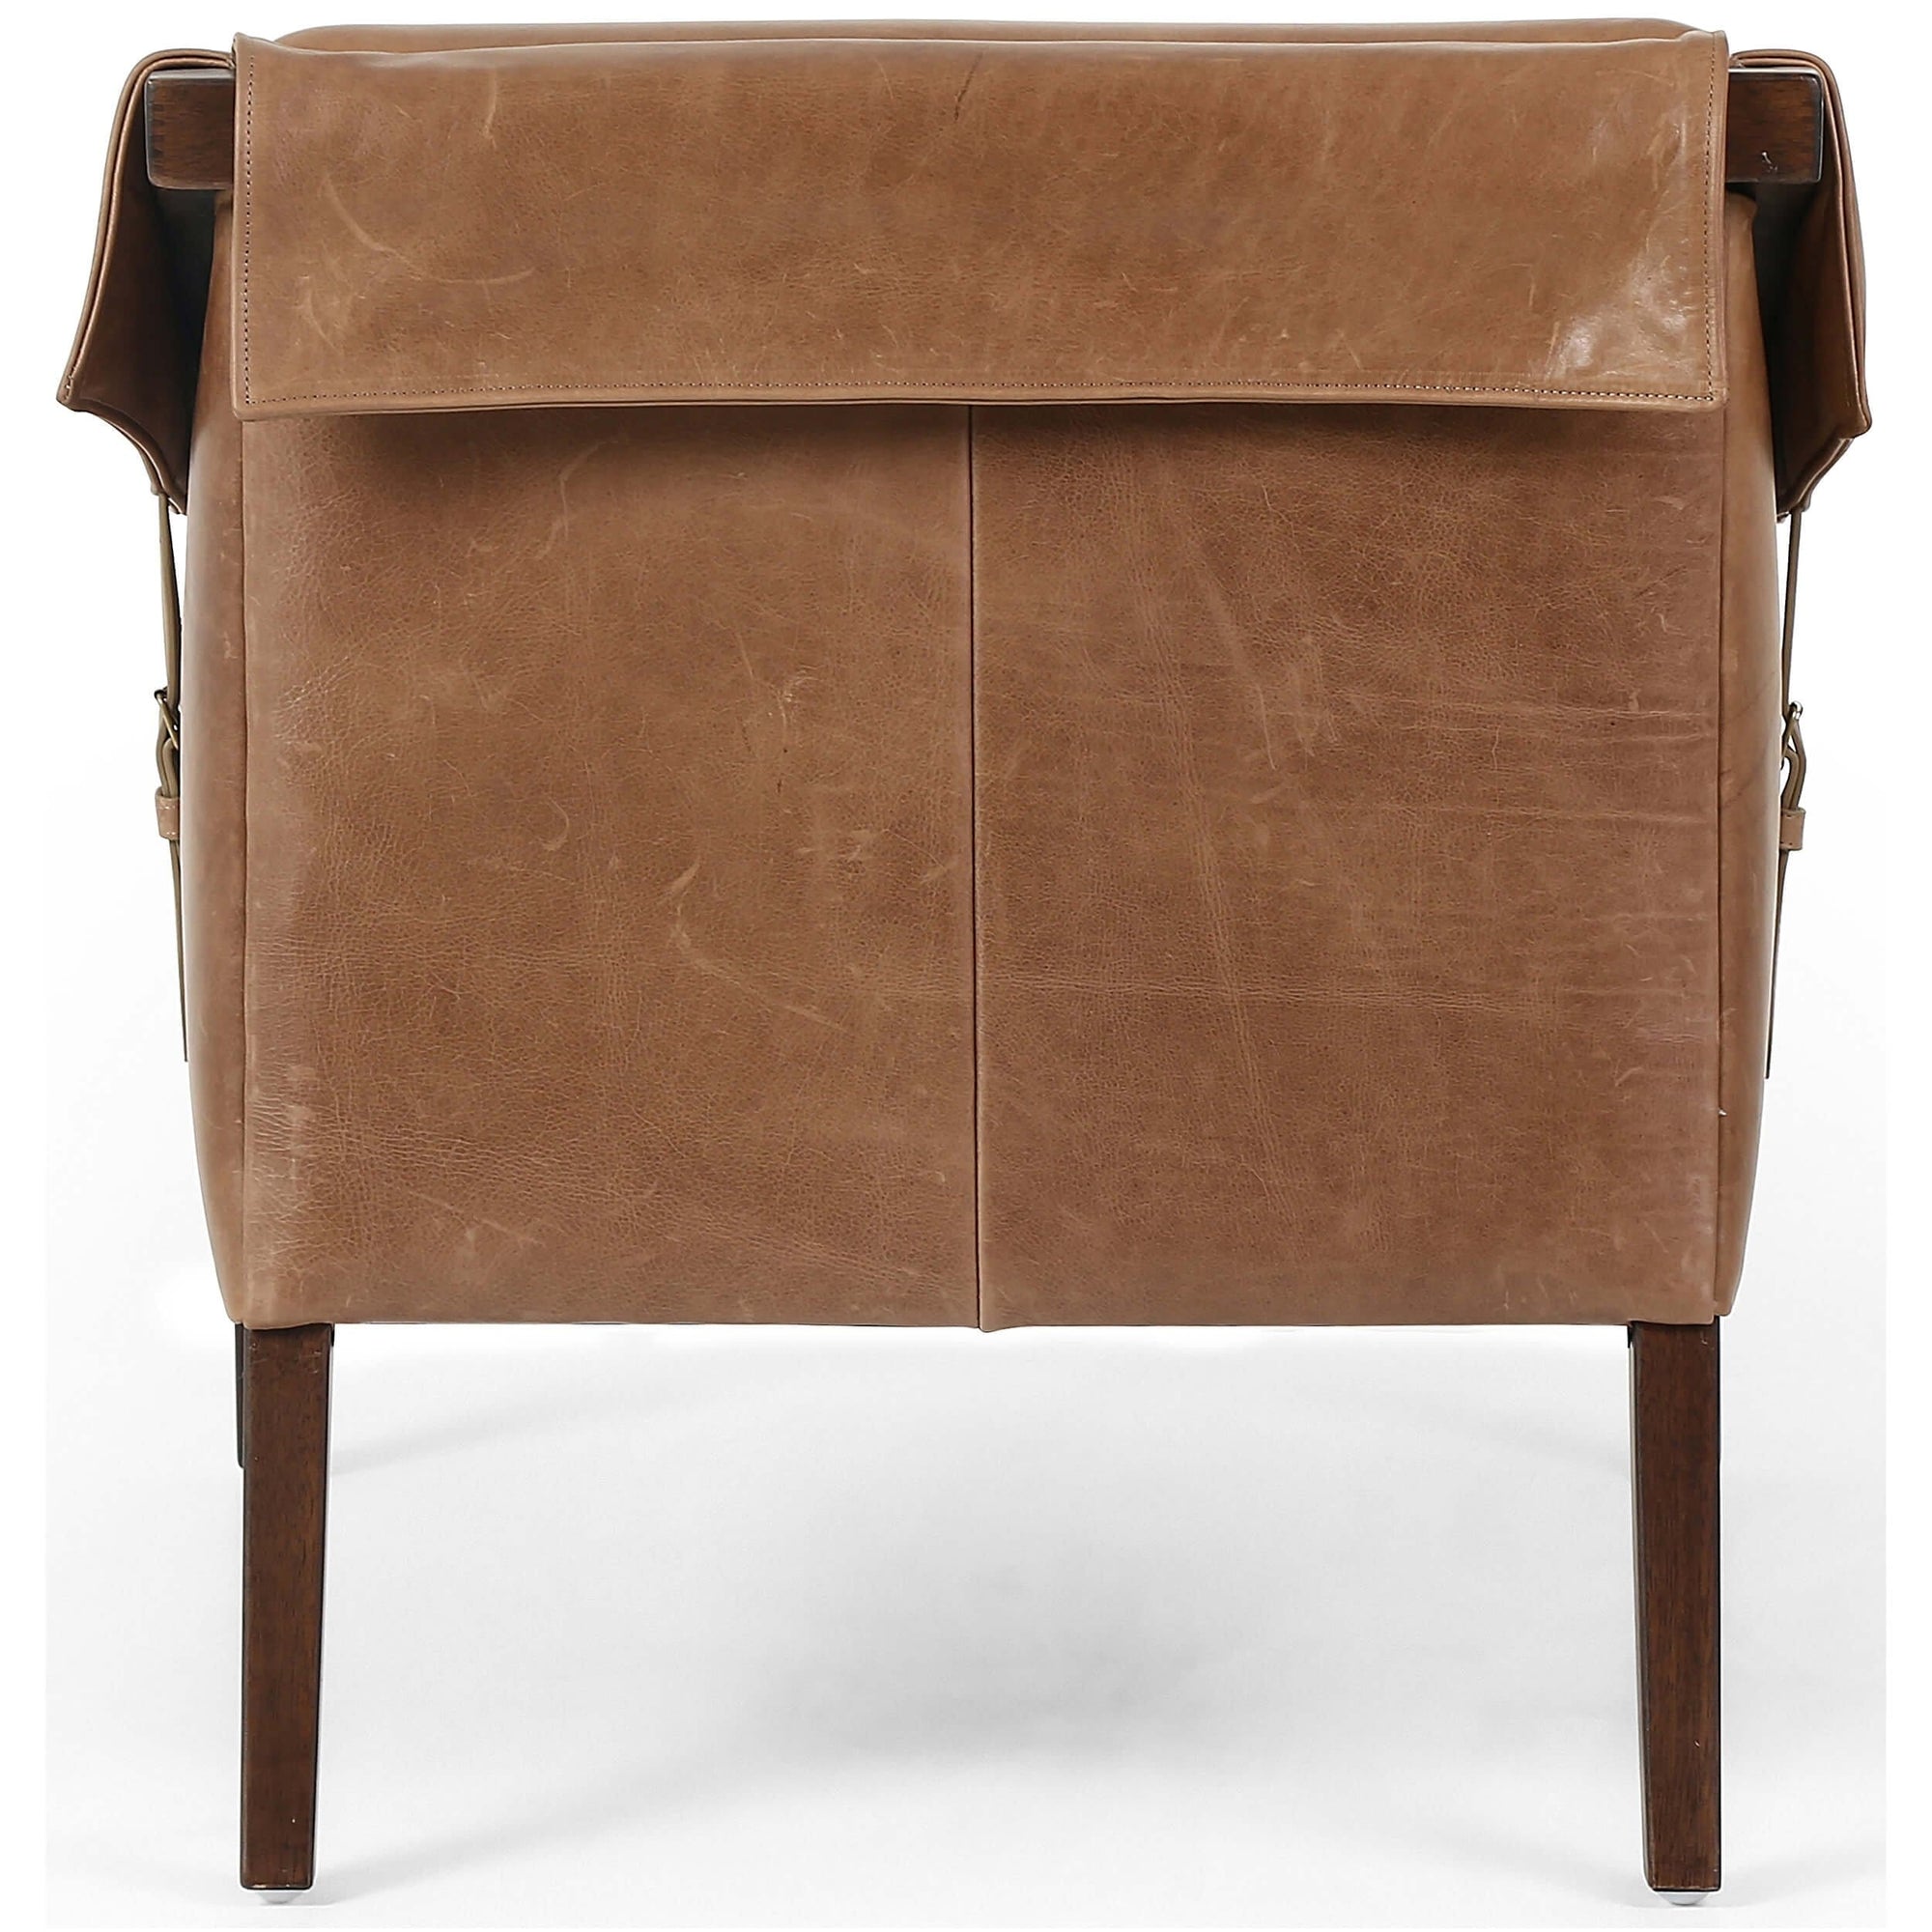 Bauer Leather Chair, Warm Taupe Dakota – High Fashion Home